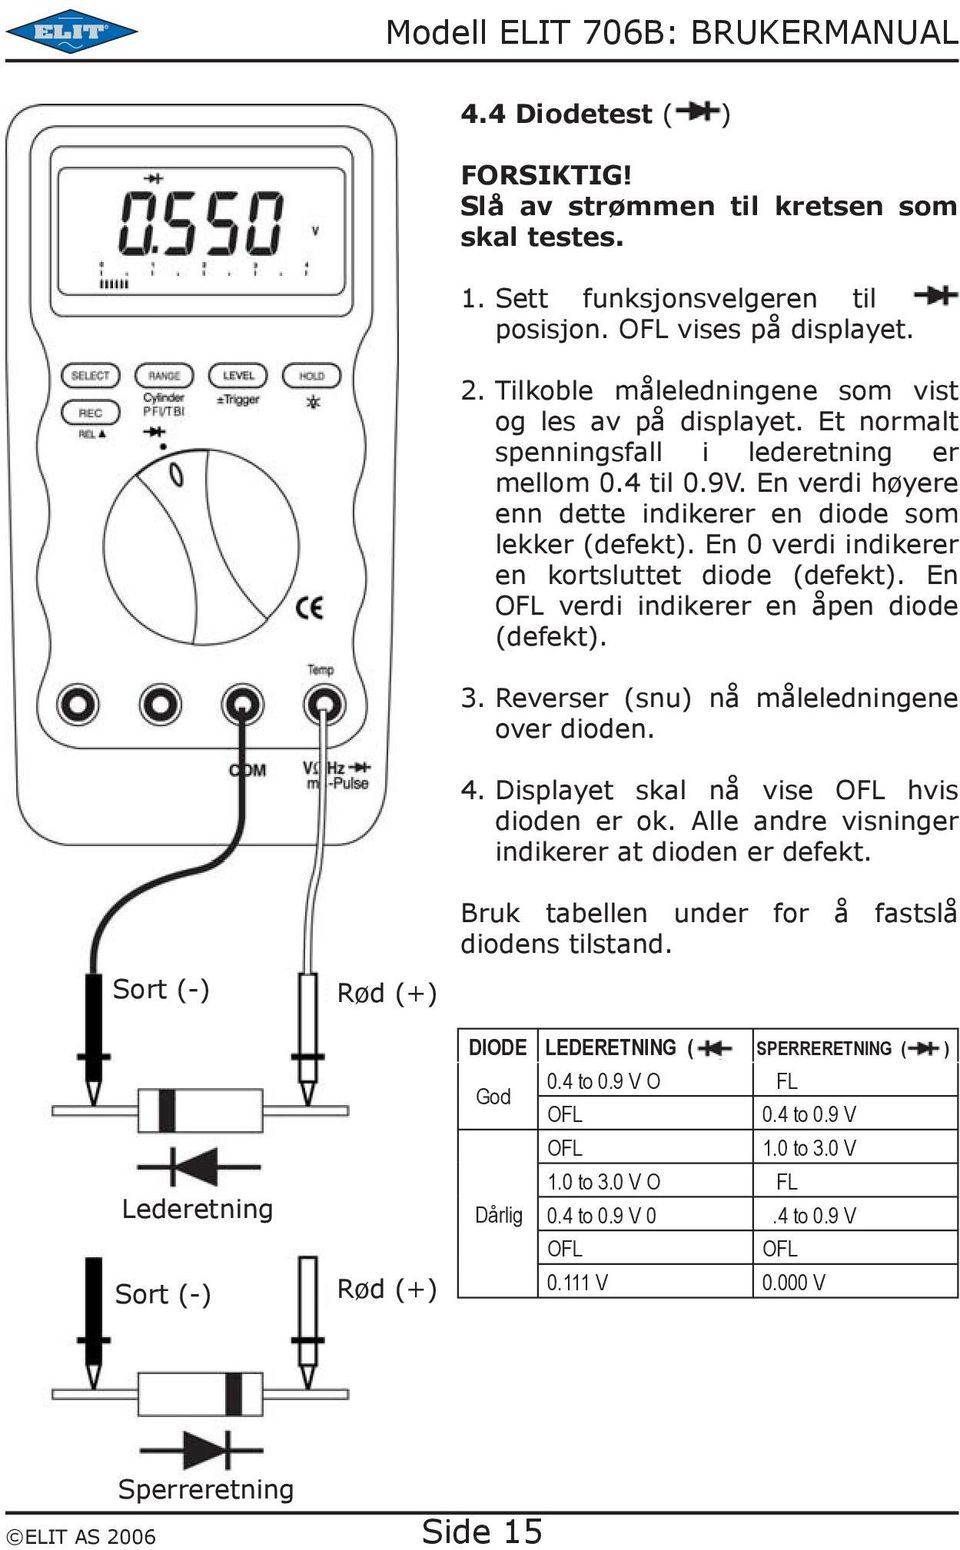 En 0 verdi indikerer en kortsluttet diode (defekt). En OFL verdi indikerer en åpen diode (defekt). 3. Reverser (snu) nå måleledningene over dioden. 4. Displayet skal nå vise OFL hvis dioden er ok.